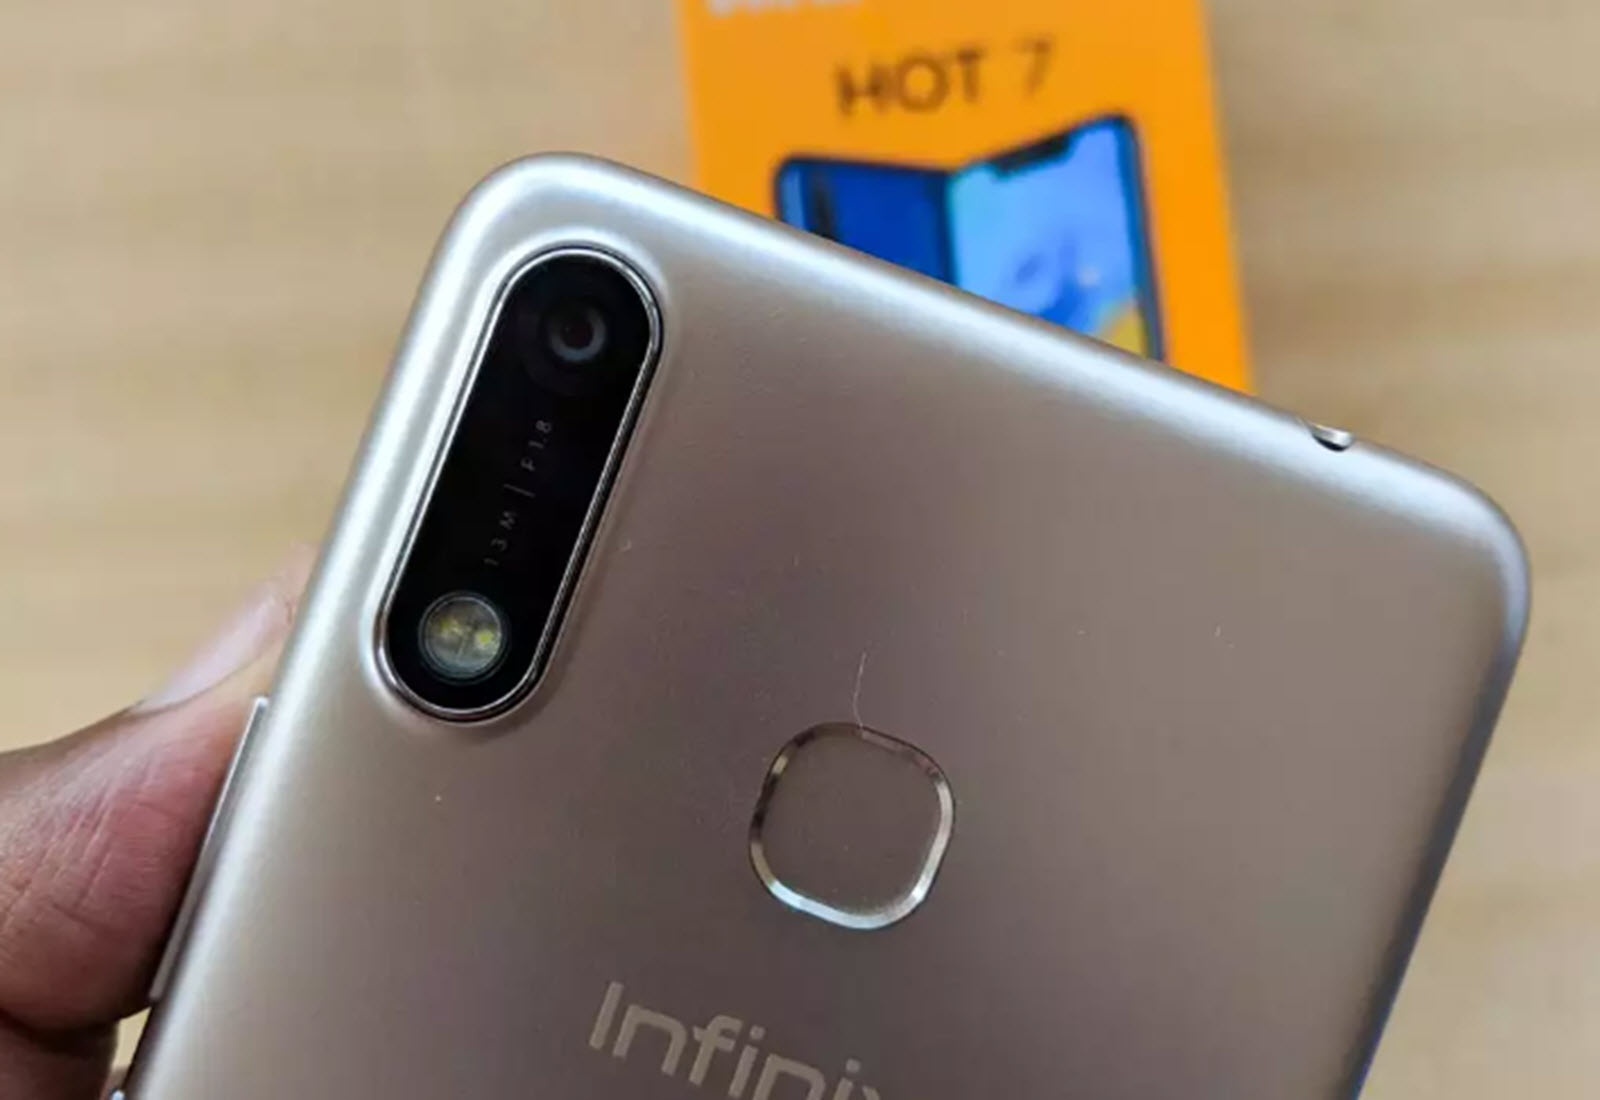 Infinix hot 7 smartphone